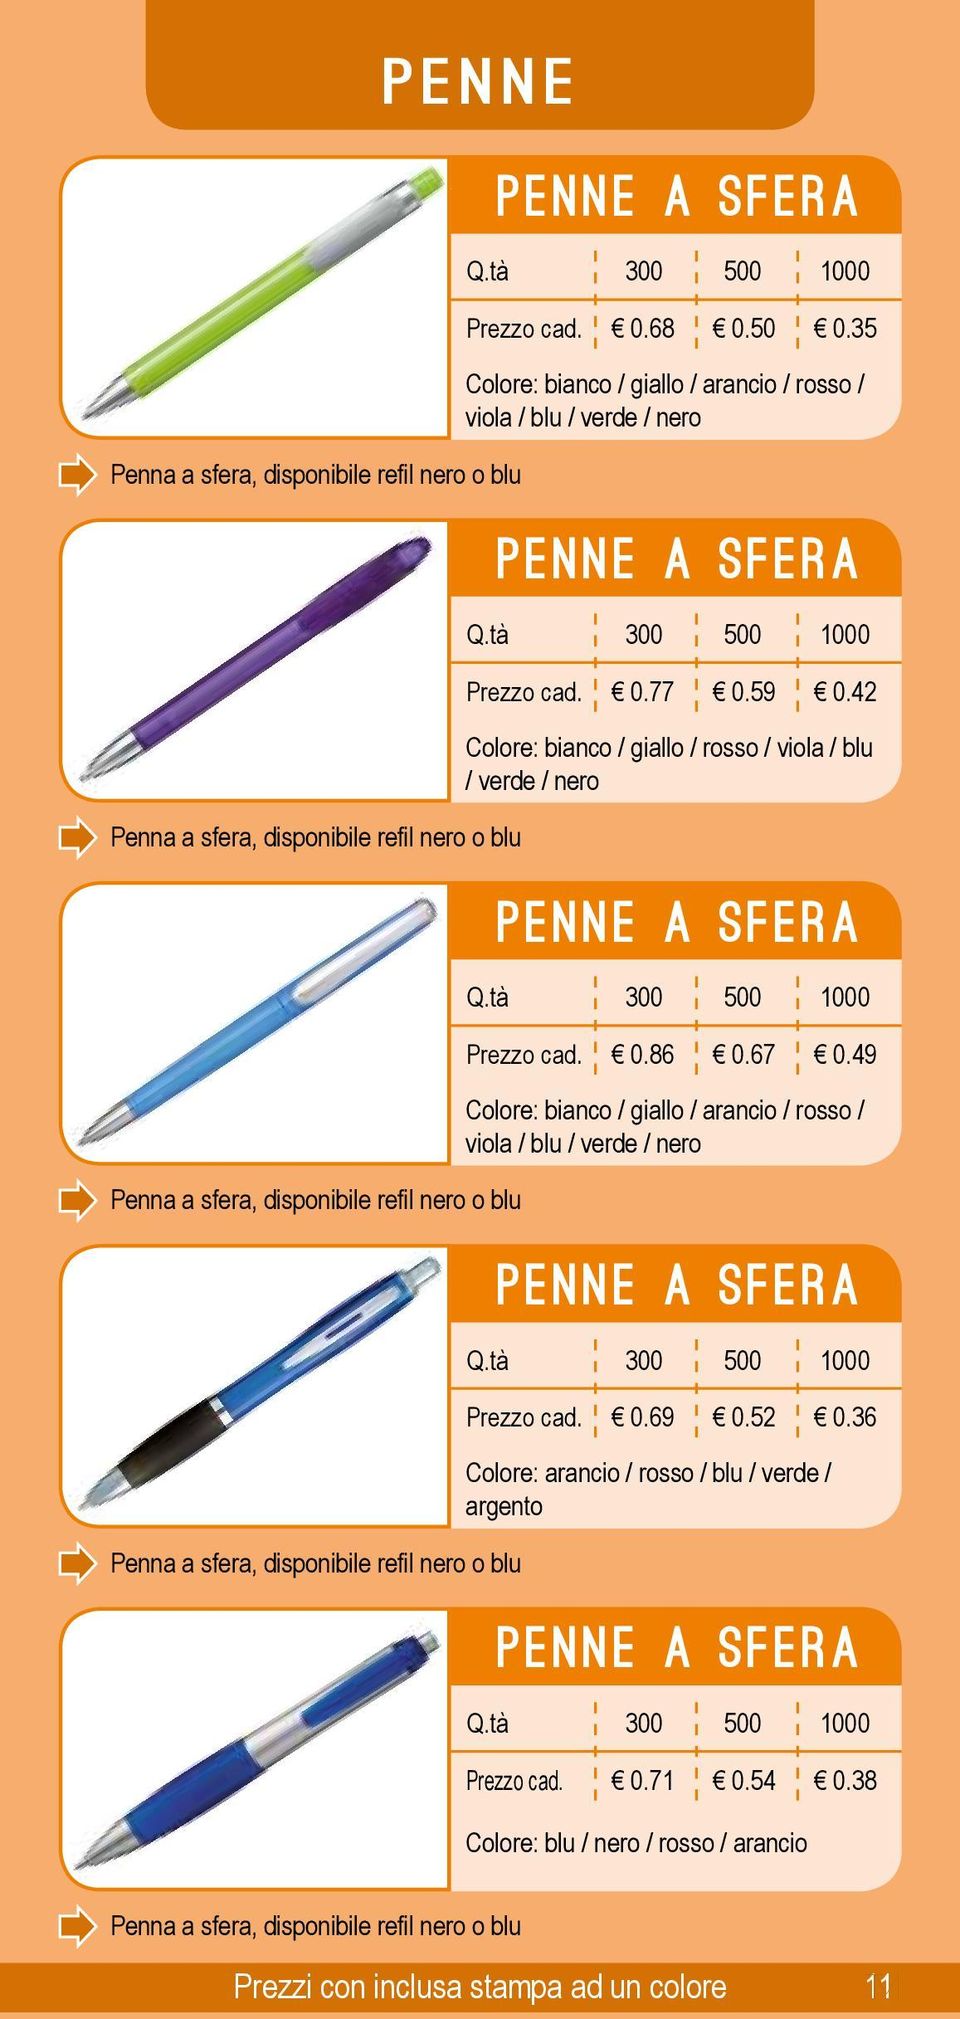 49 Penna a sfera, disponibile refil nero o blu Colore: bianco / giallo / arancio / rosso / viola / blu / verde / nero 0 0.69 0.52 0.